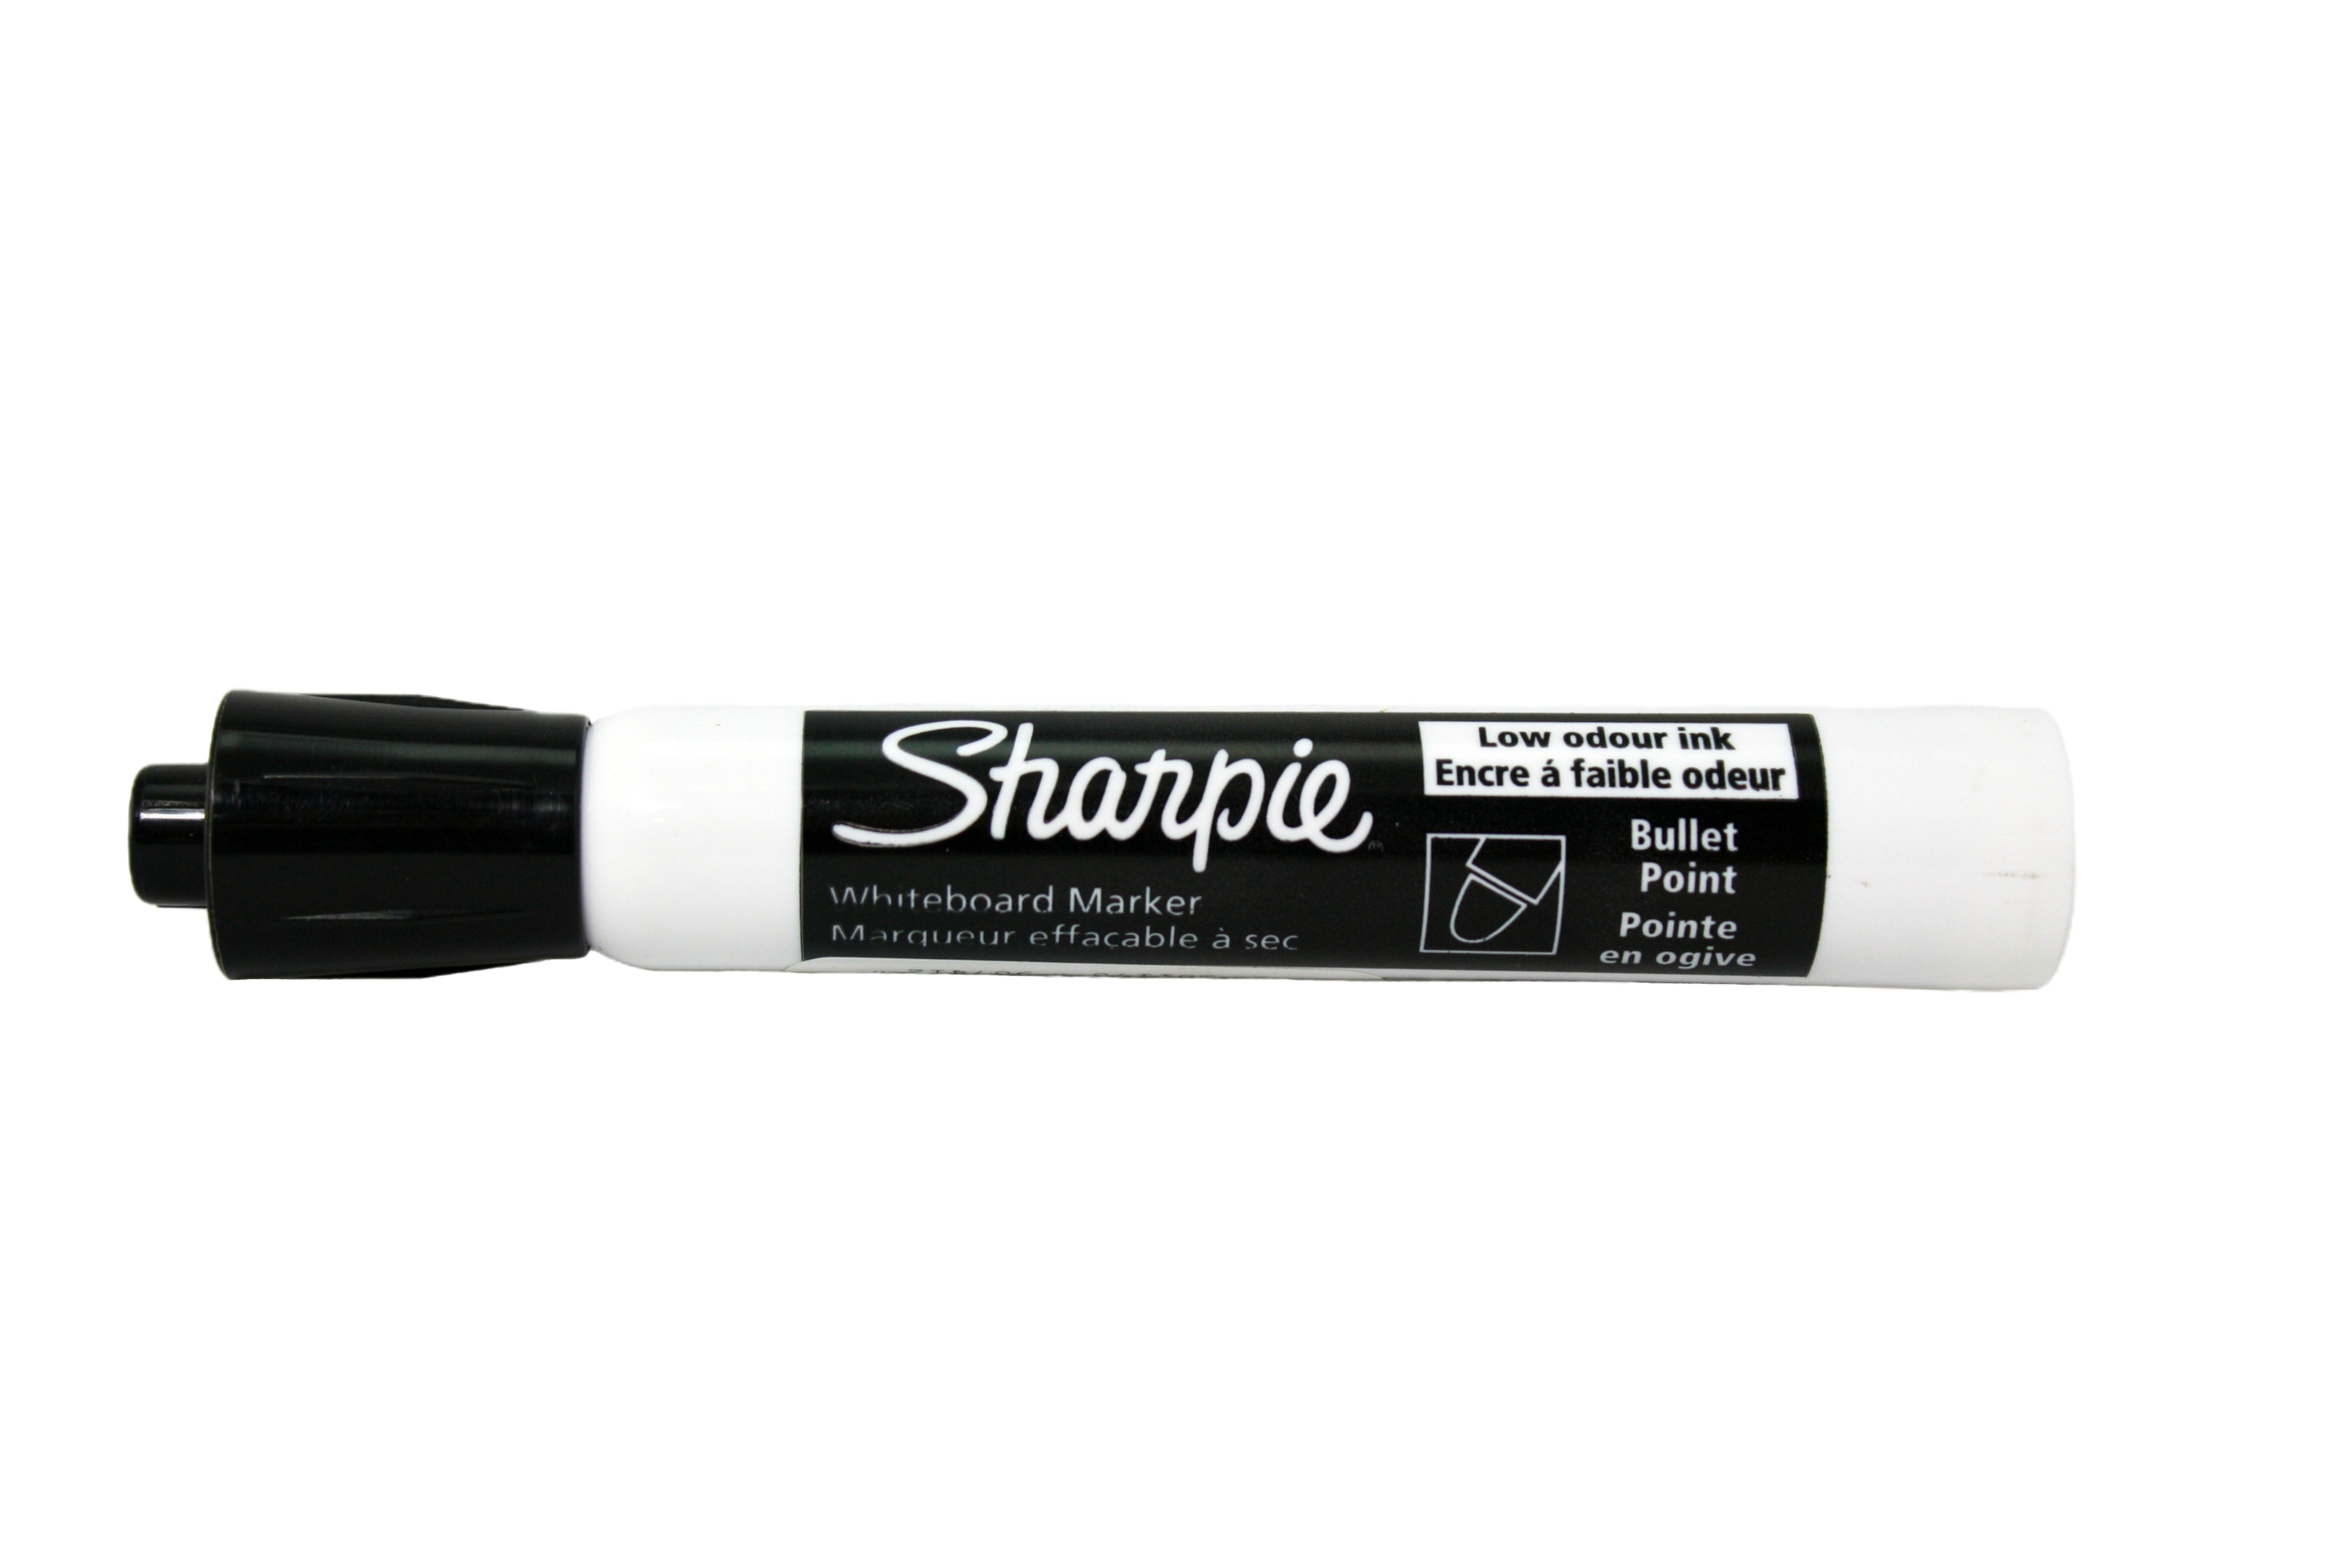 Sharpie Whiteboard Marker, black, lid on